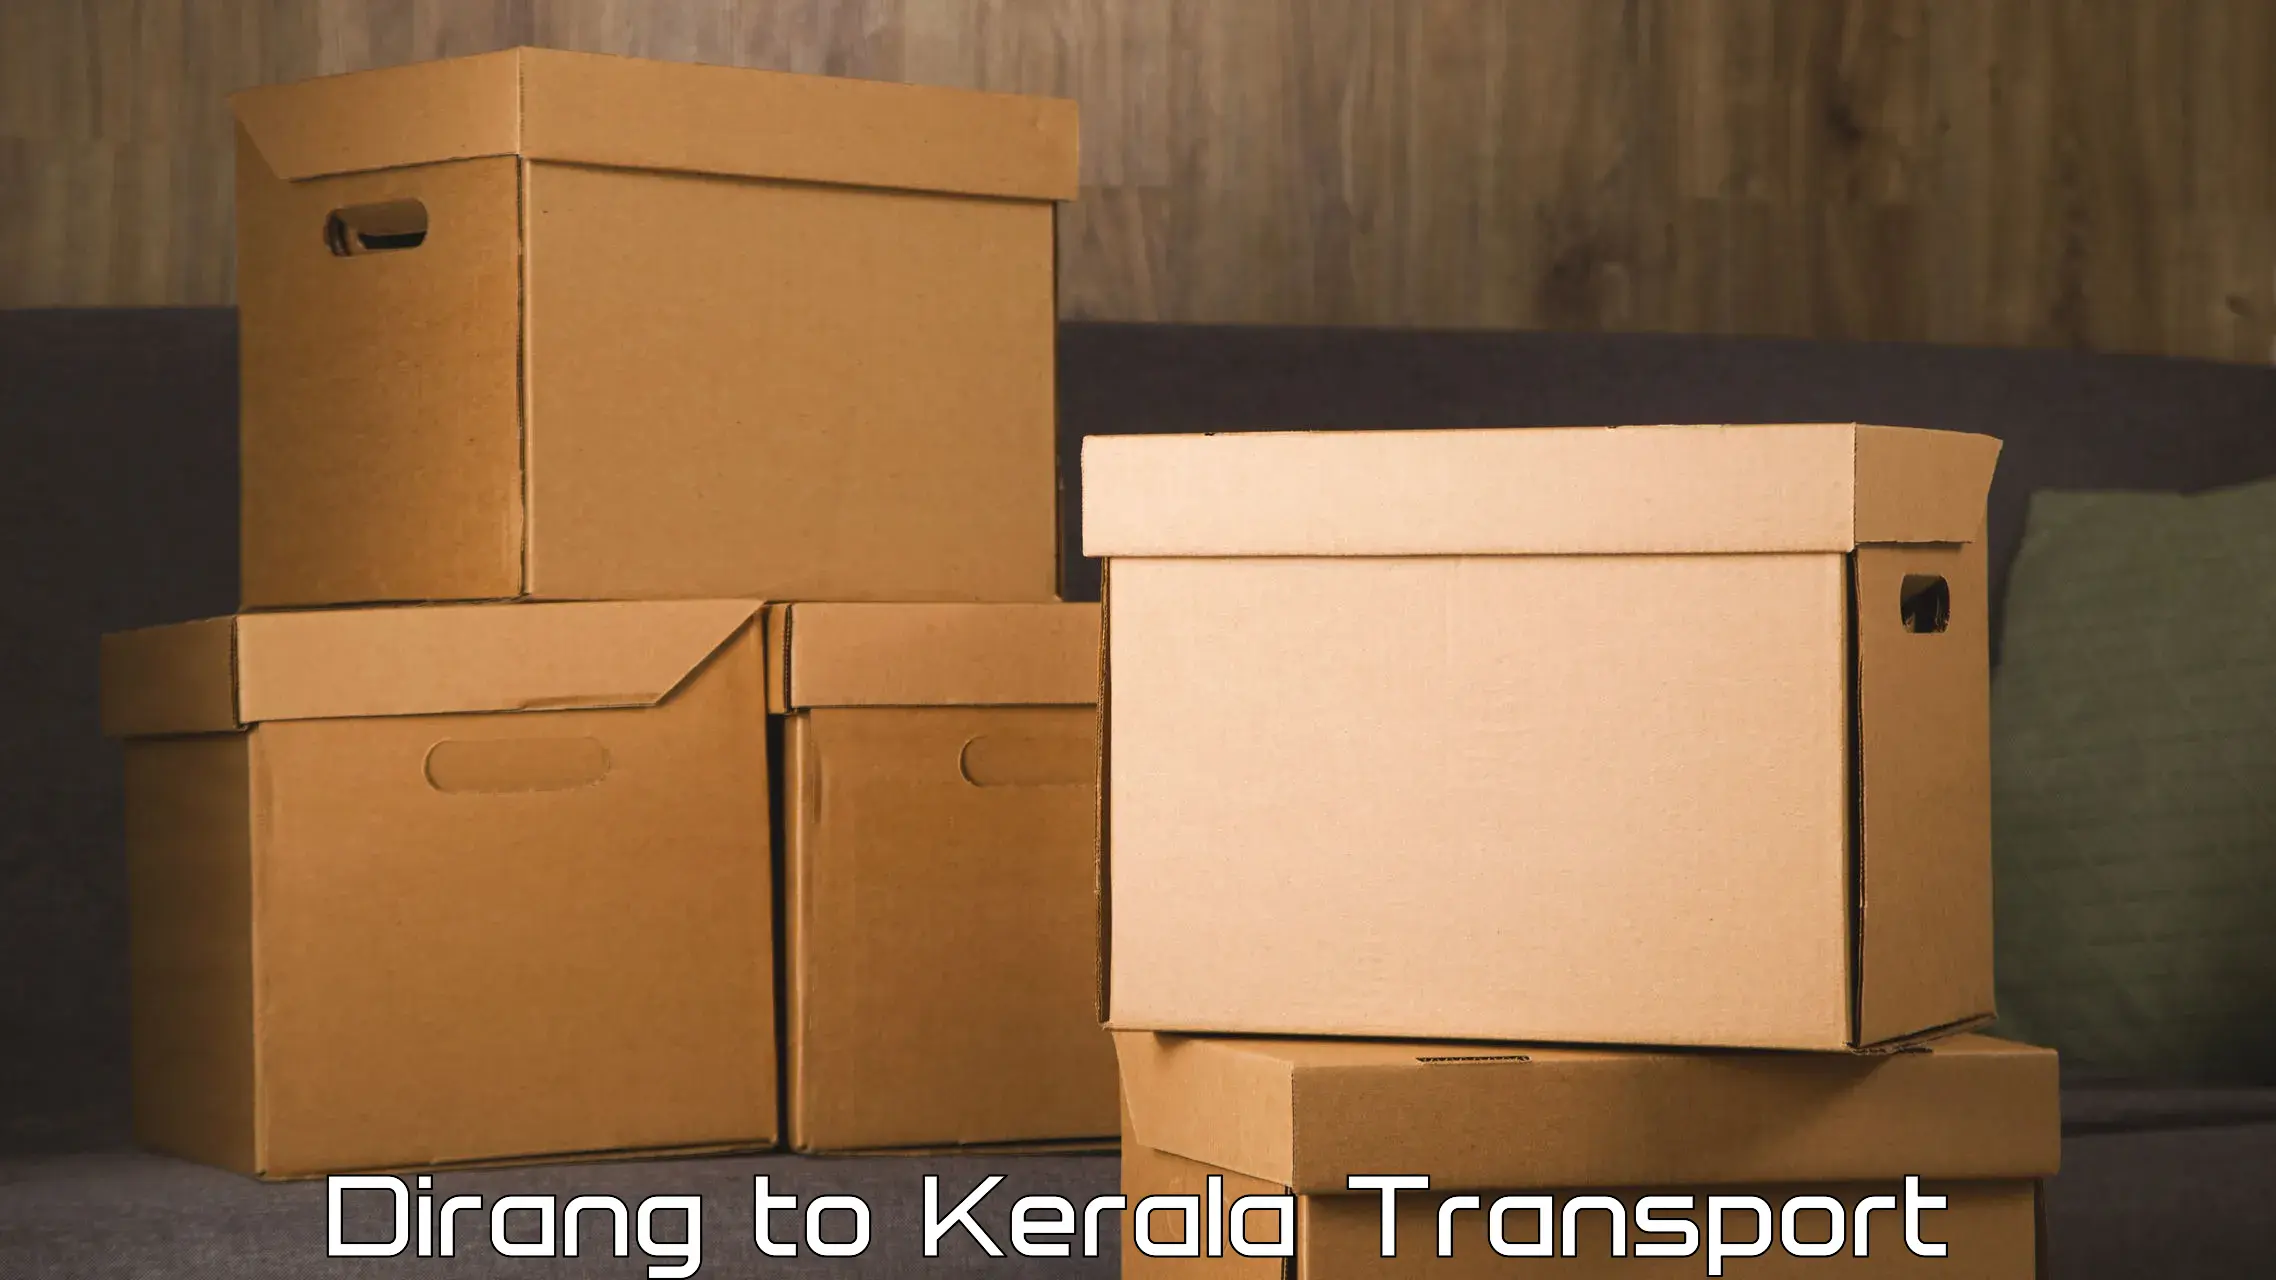 Logistics transportation services Dirang to Kerala